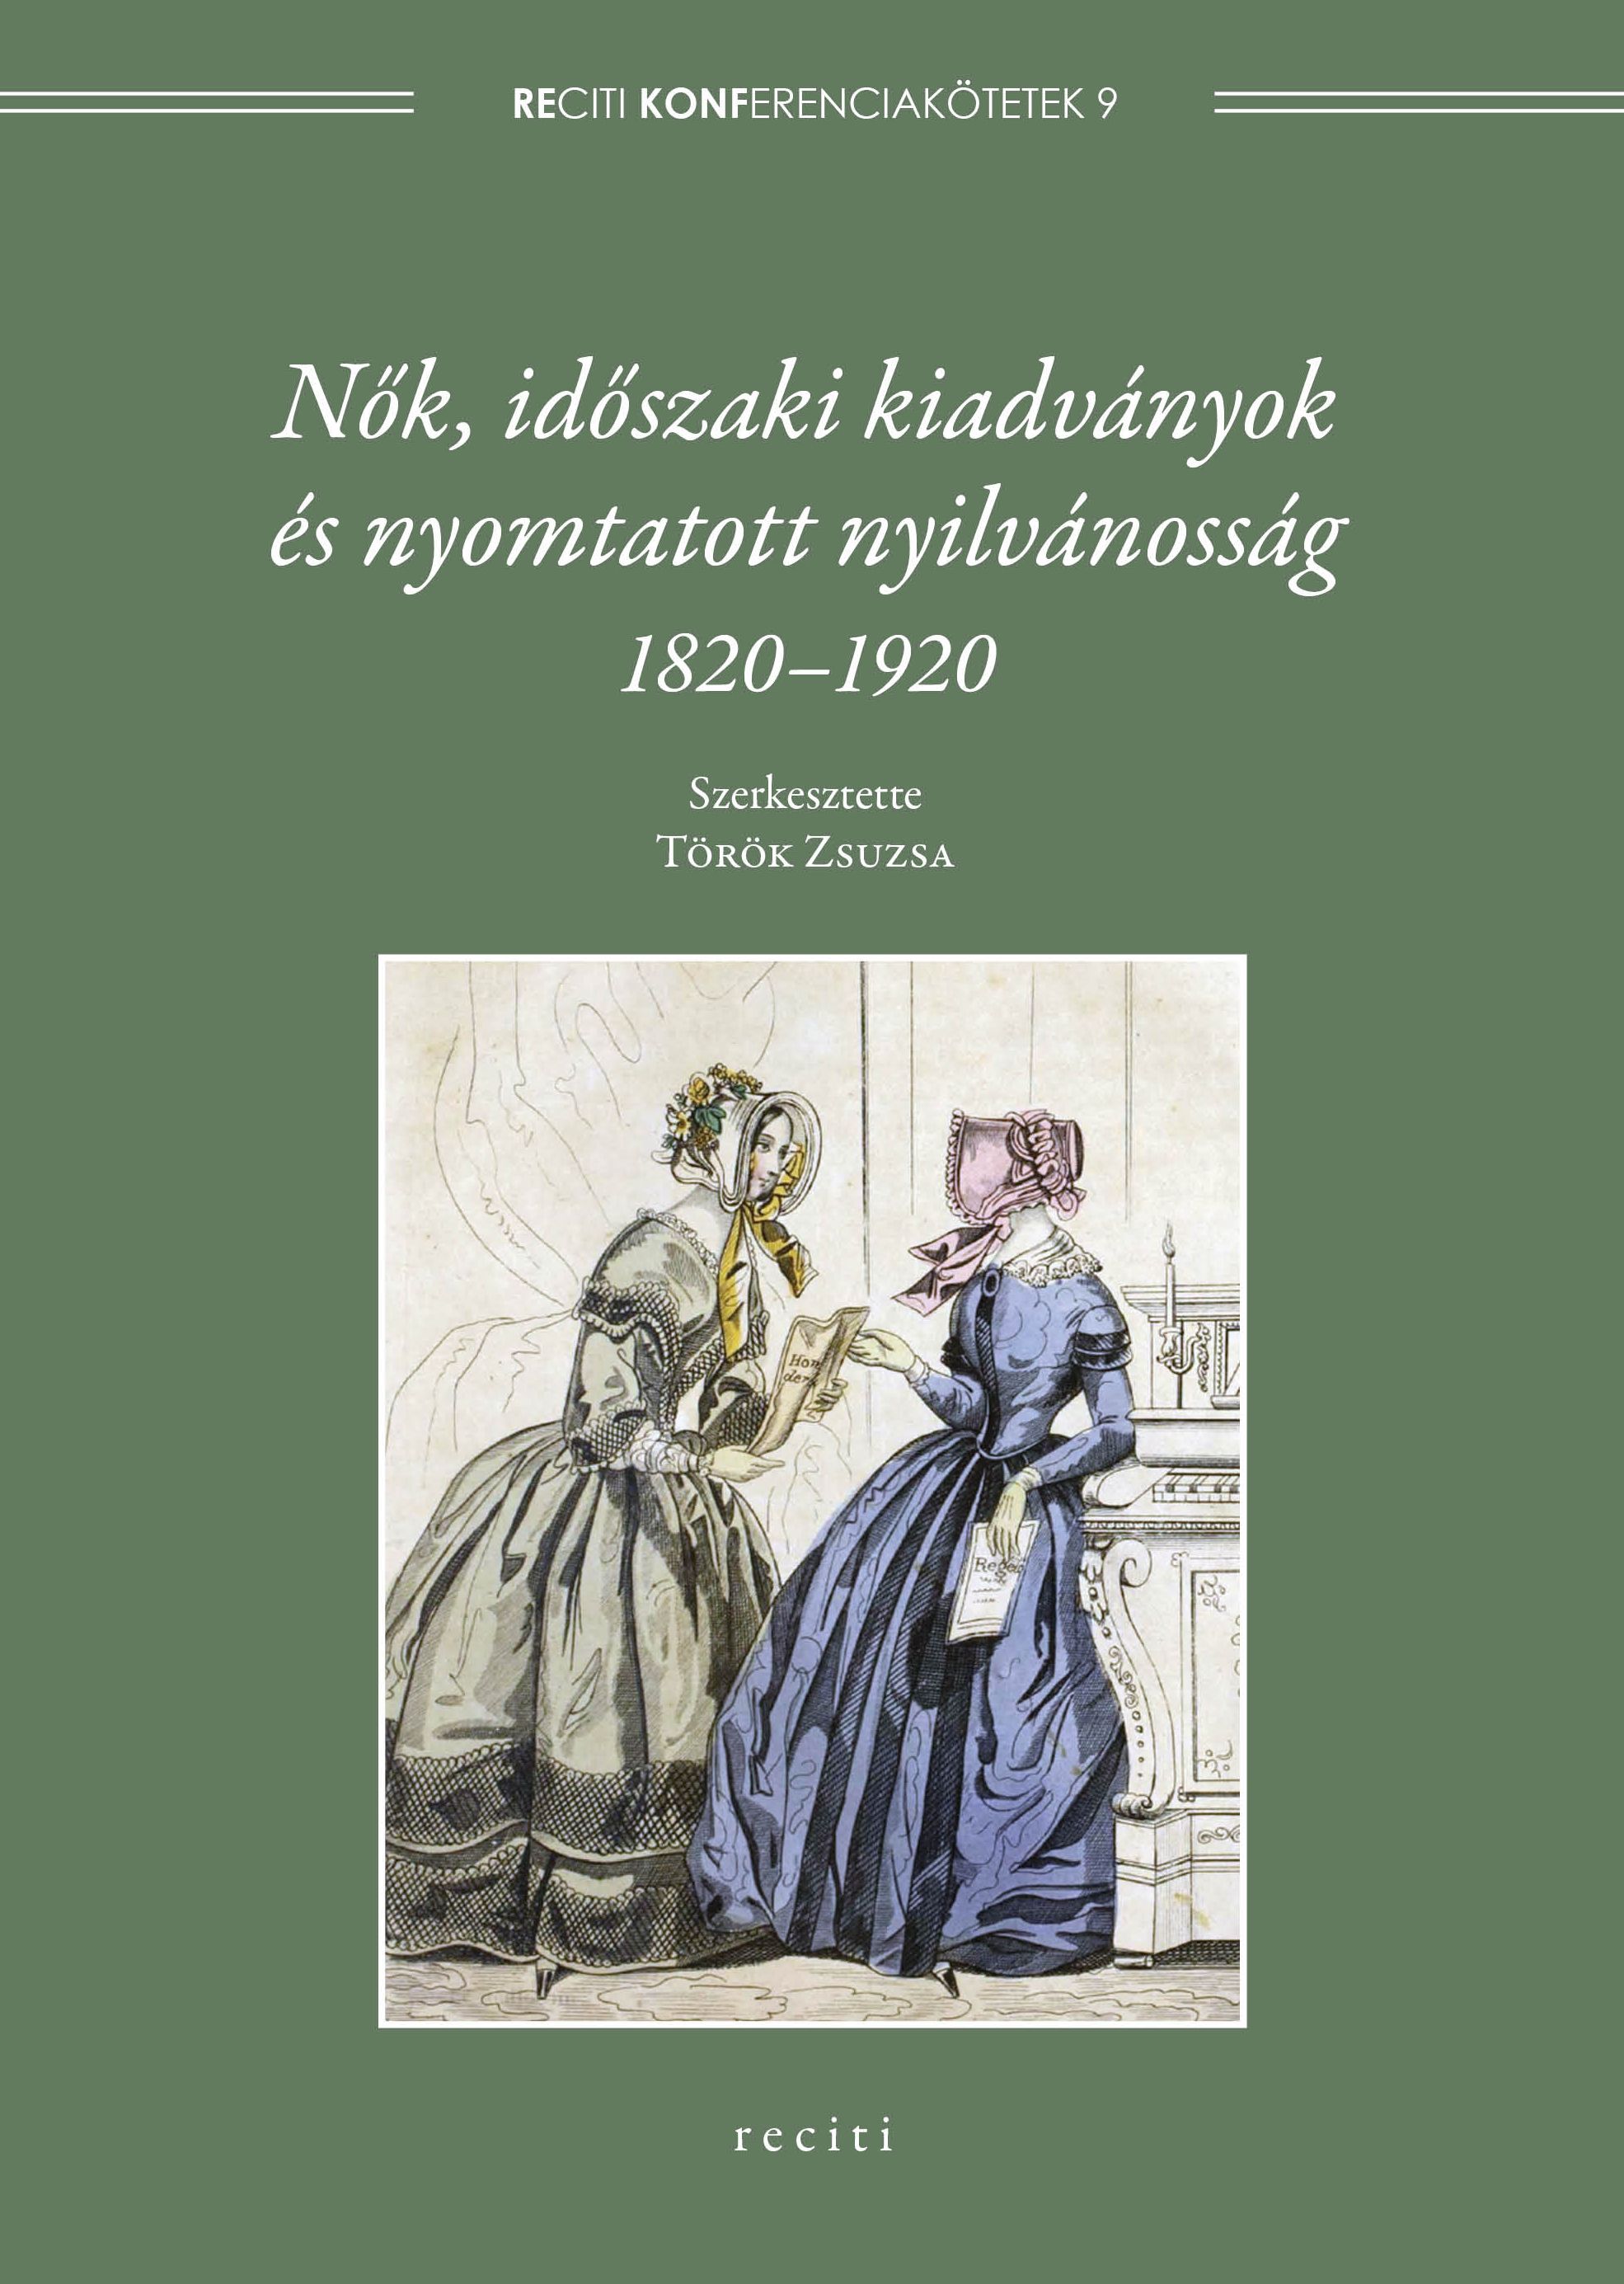 Nők, időszaki kiadványok és nyomtatott nyilvánosság, 1820–1920 – megjelent a Reciti konferenciakötetek 9. darabja